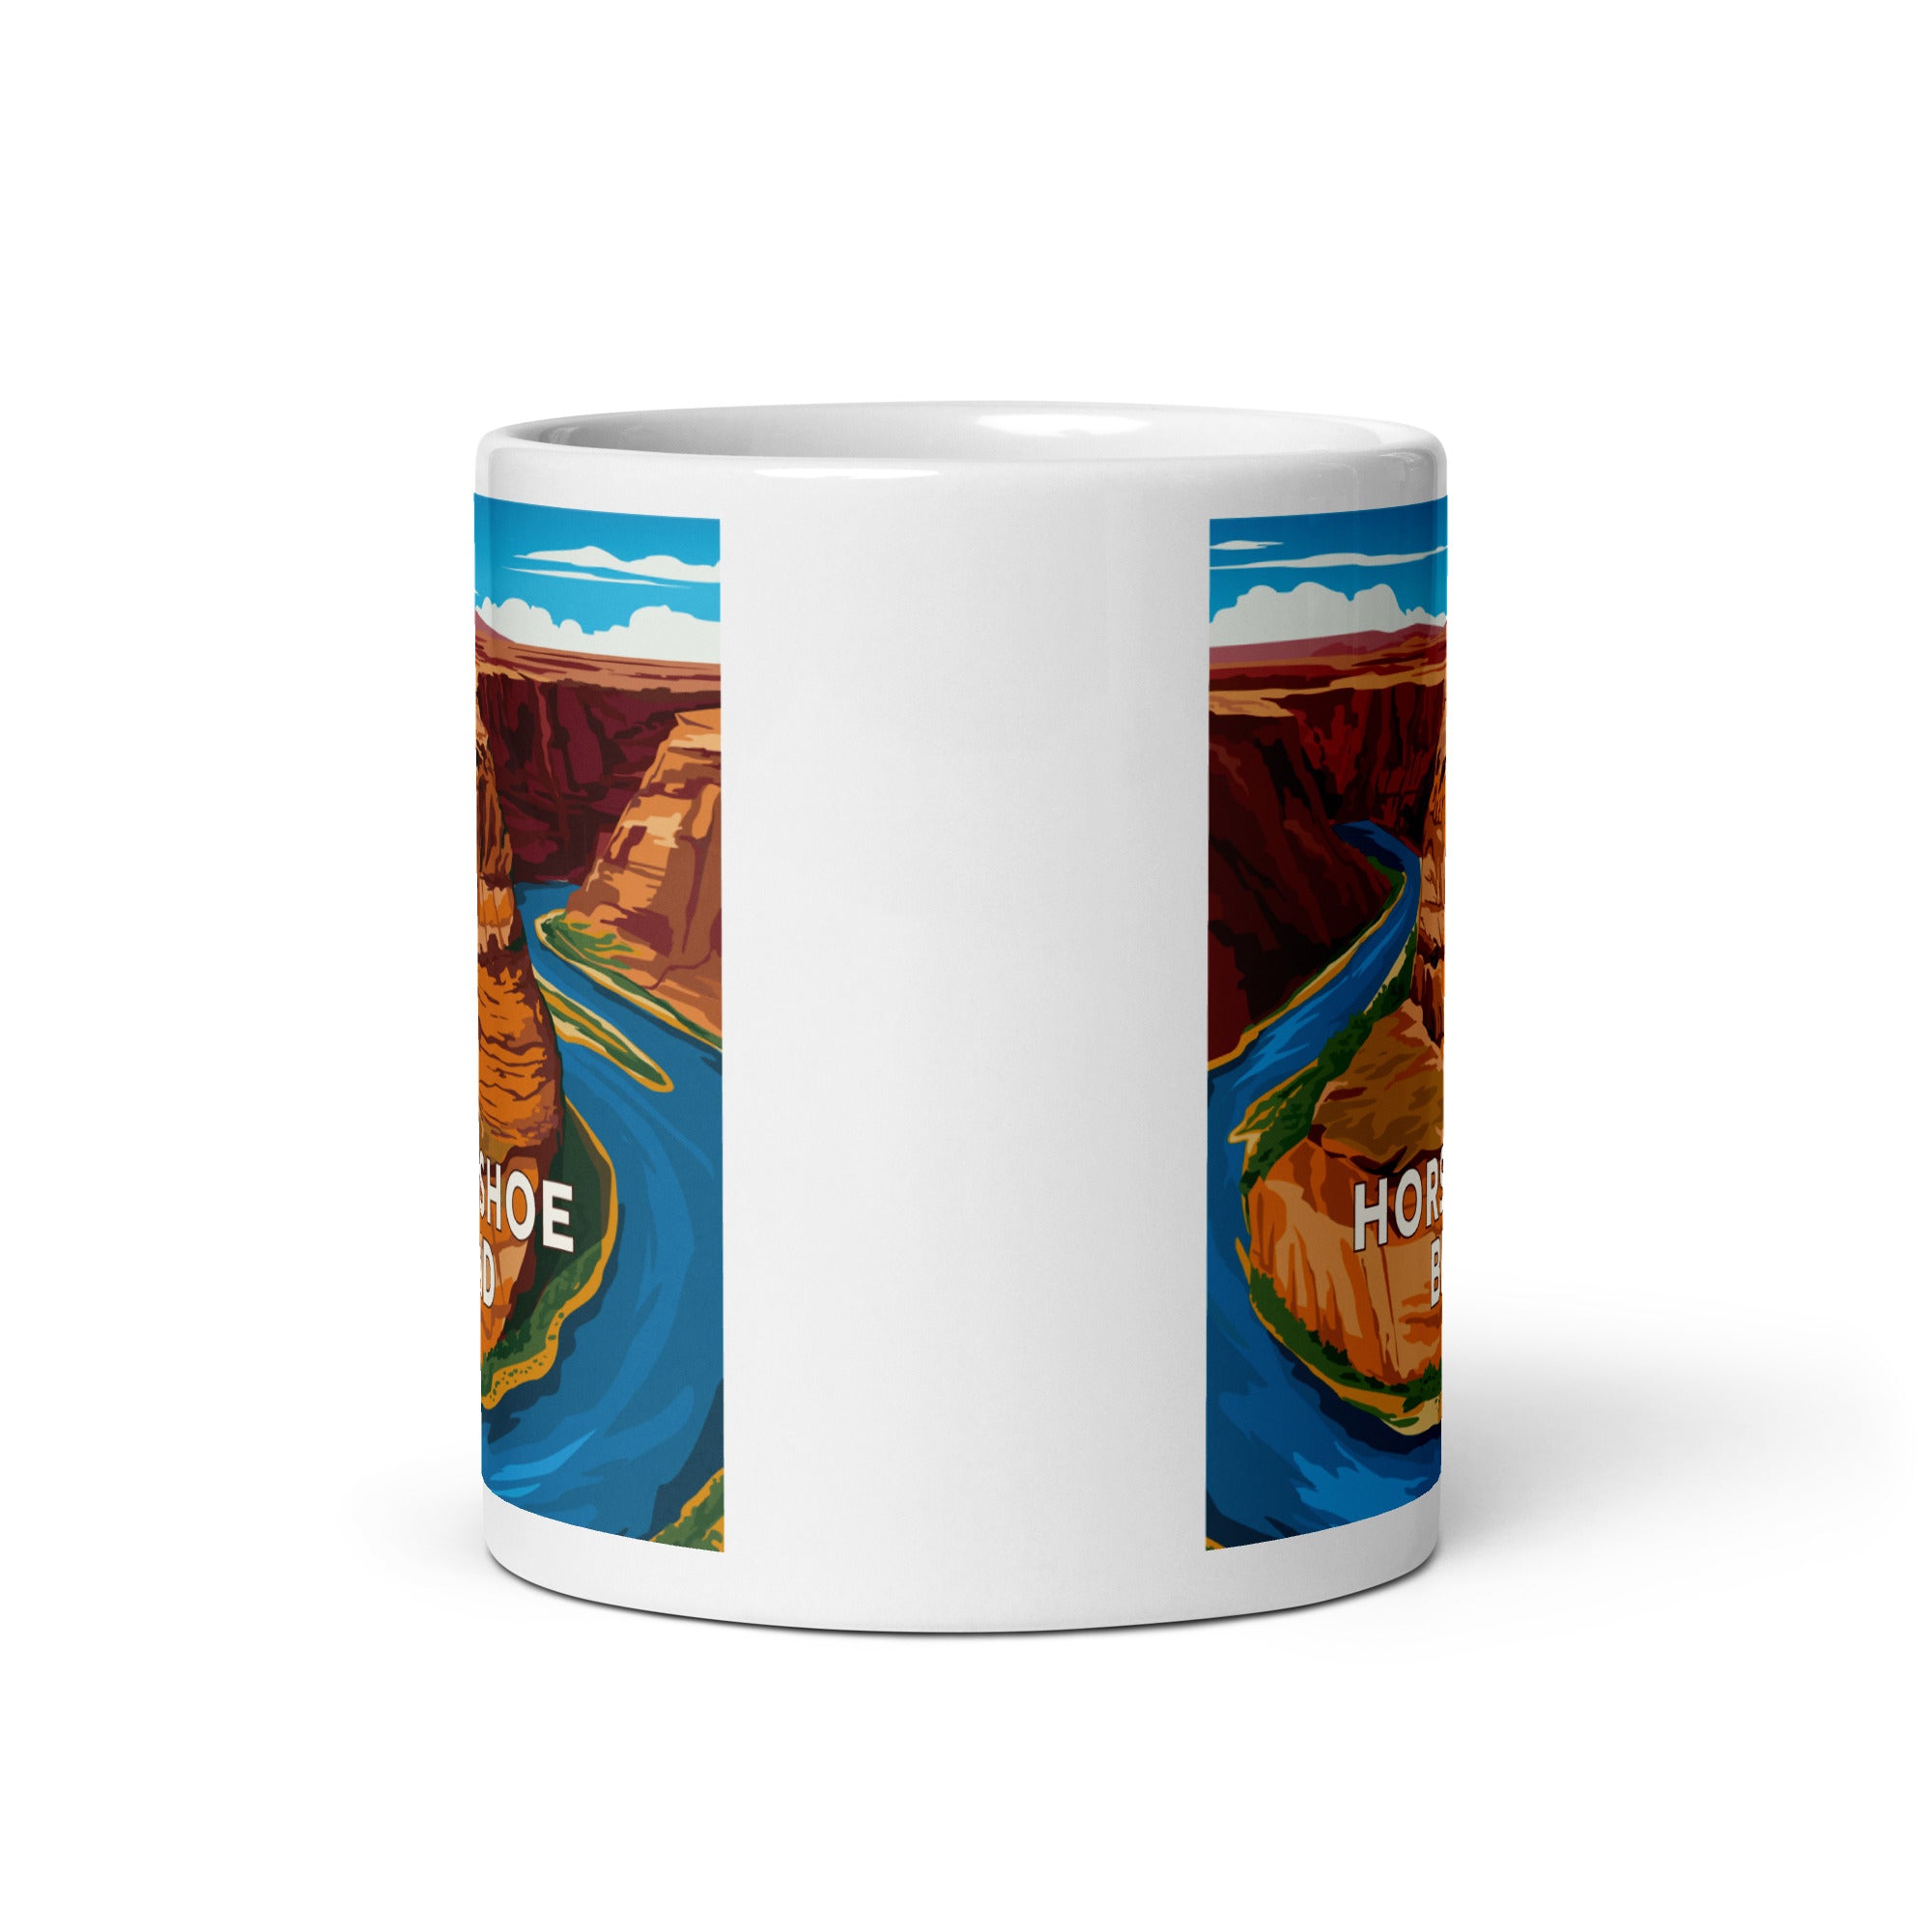 Landmark AZ | Horseshoe Bend White glossy mug